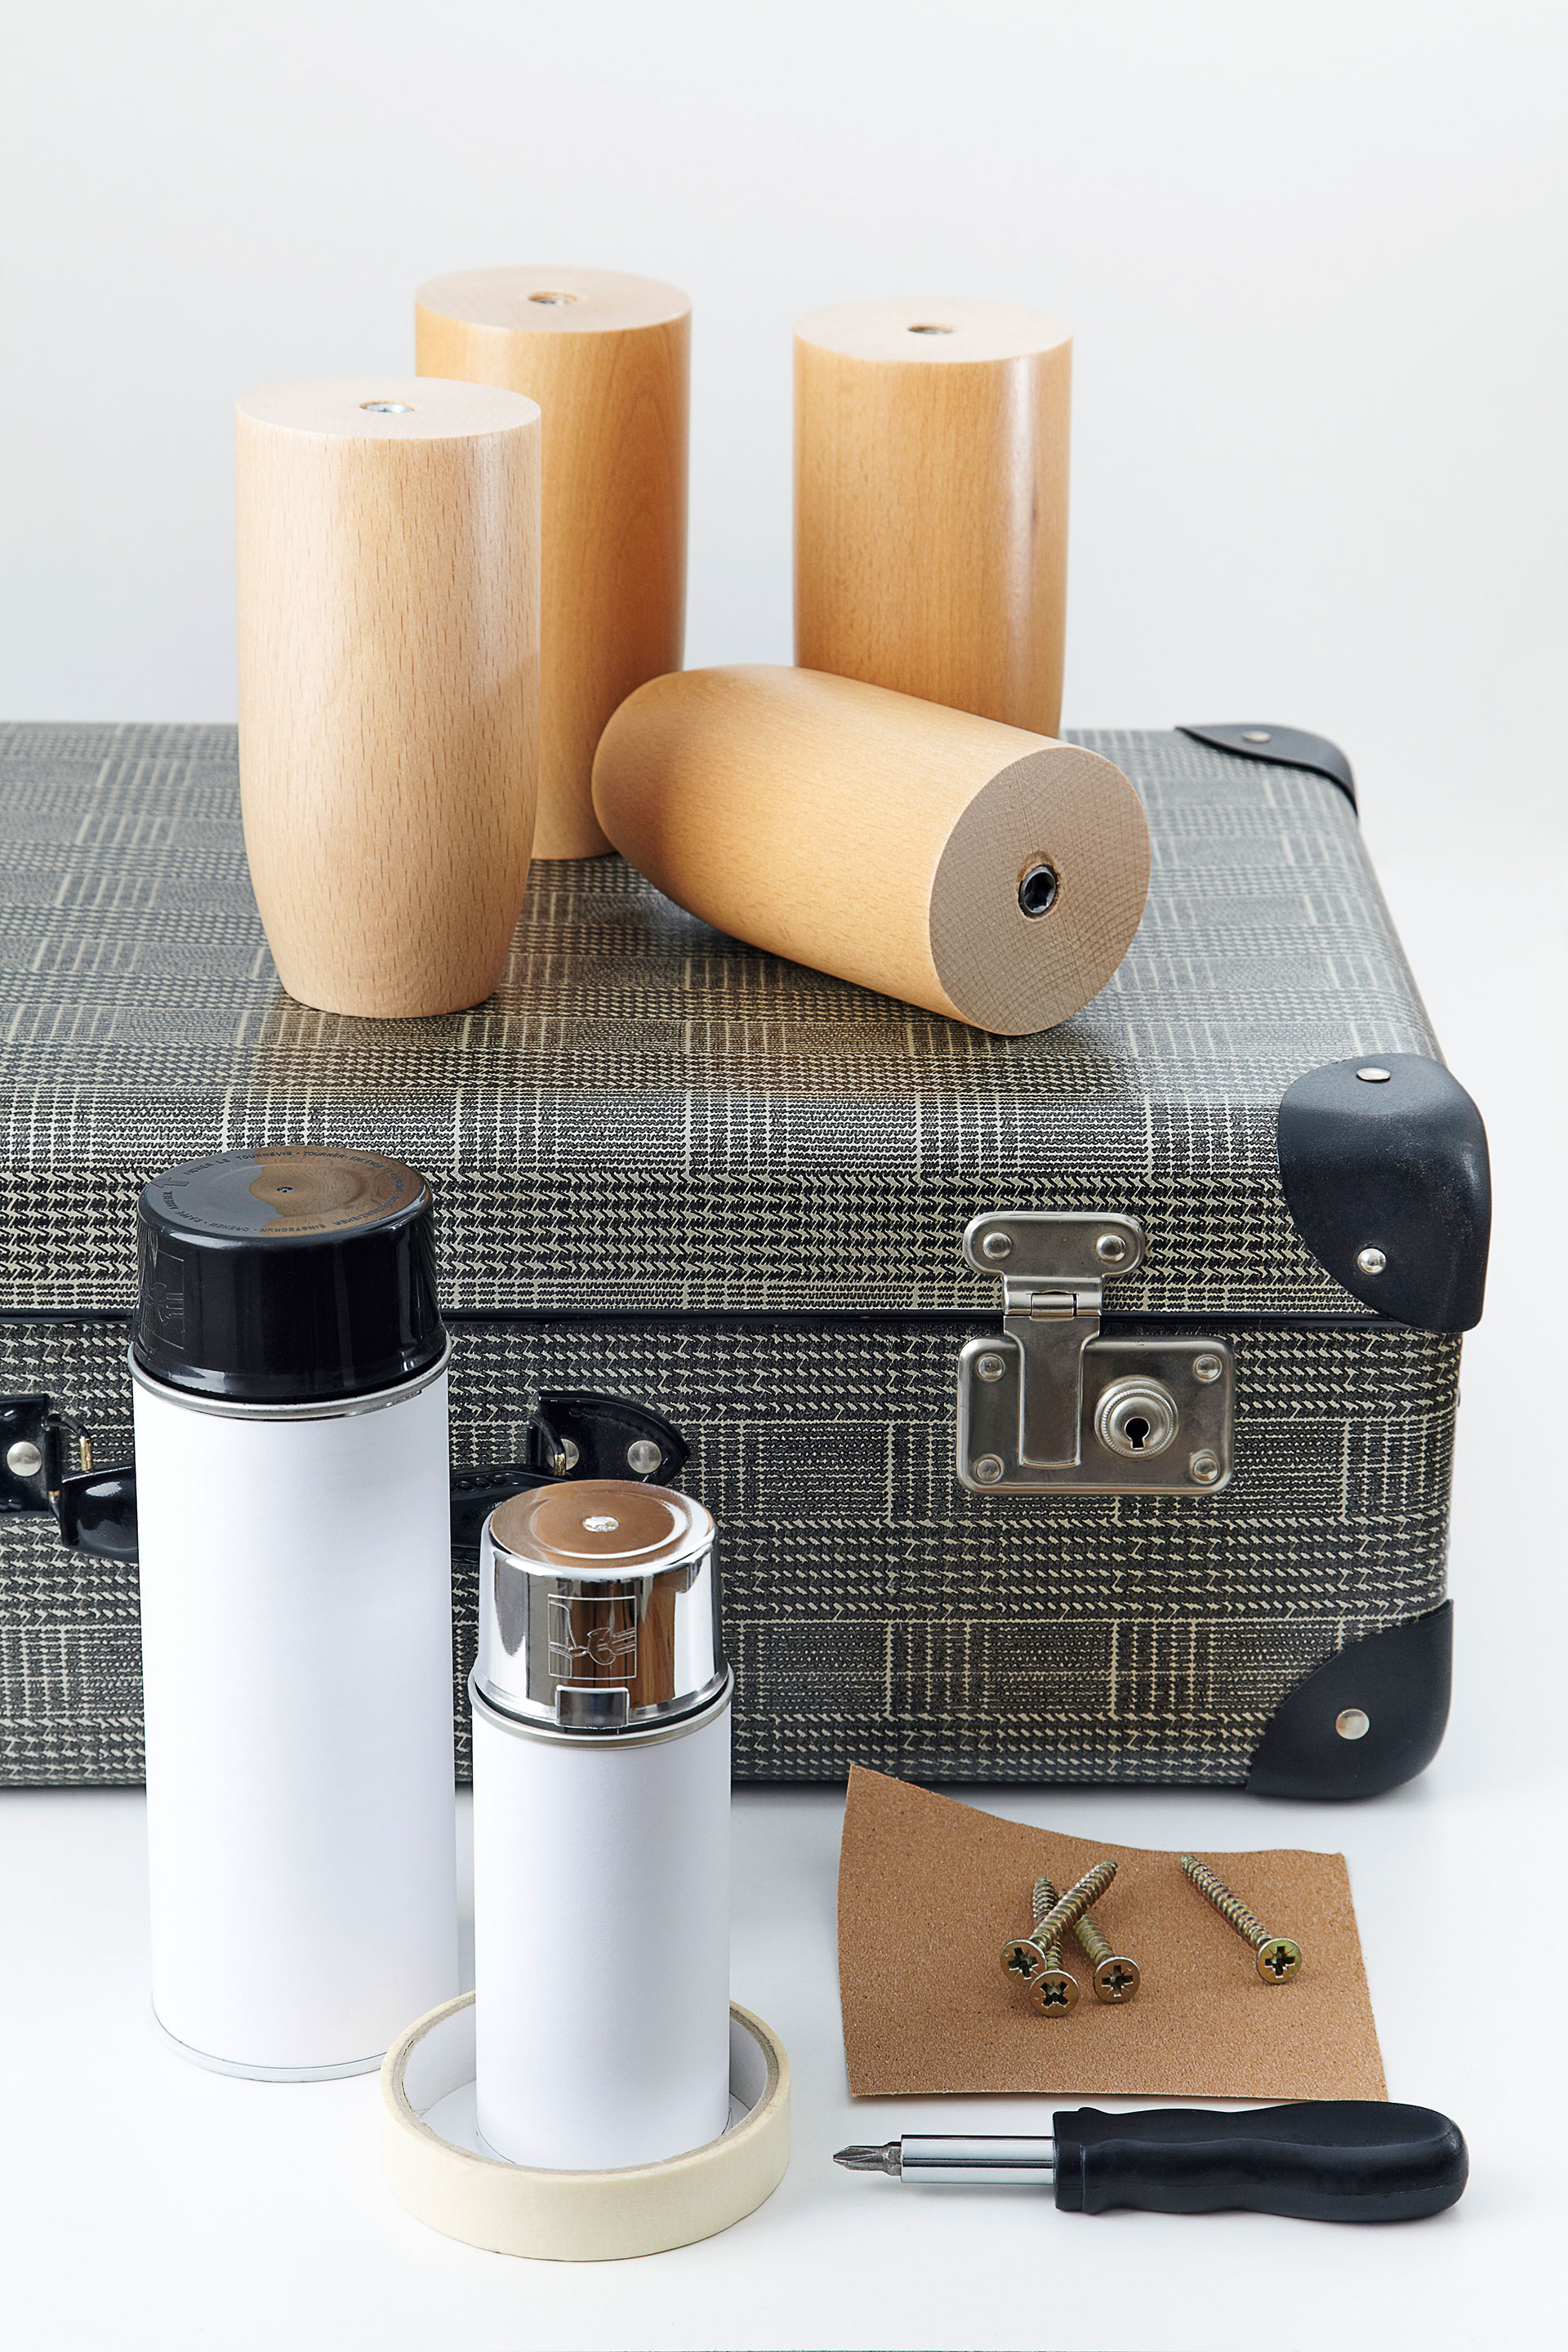 Material: Koffer, Möbelfüße, Kreppklebeband, Schleifpapier, Schrauben, Schraubenzieher